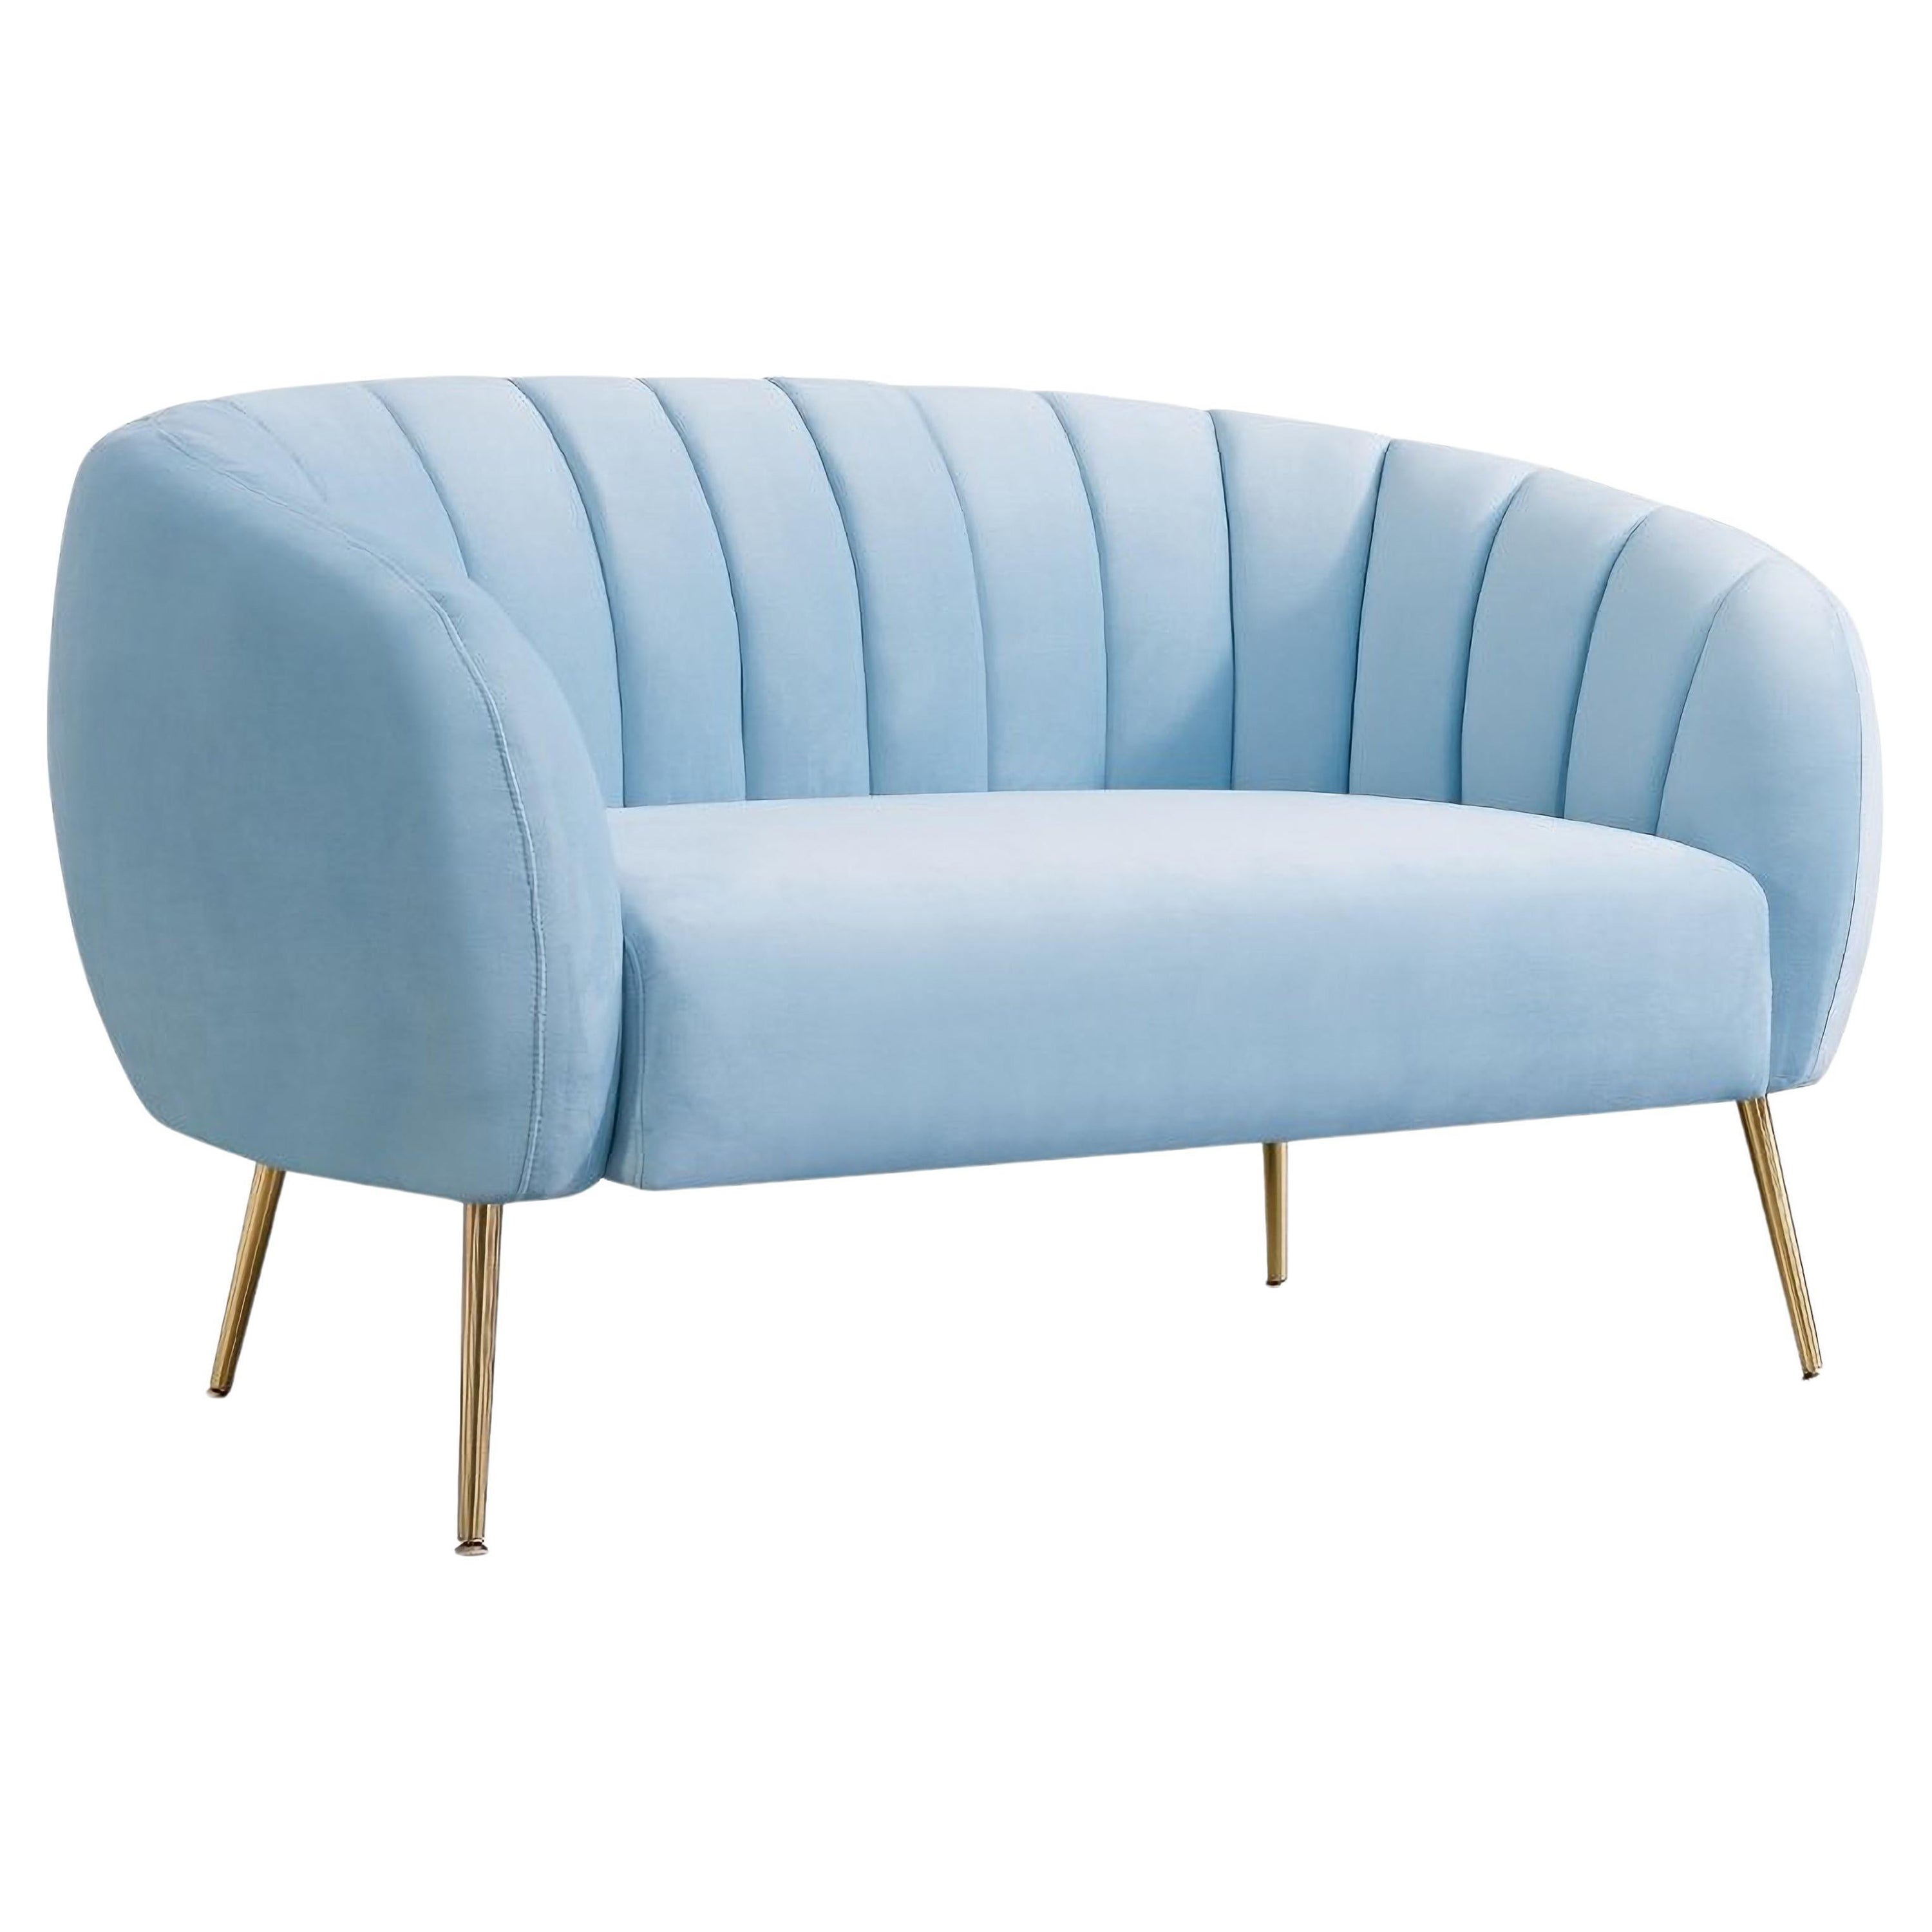 Hellblaues gepolstertes 2sitziges Sofa aus Samt, neu im Angebot